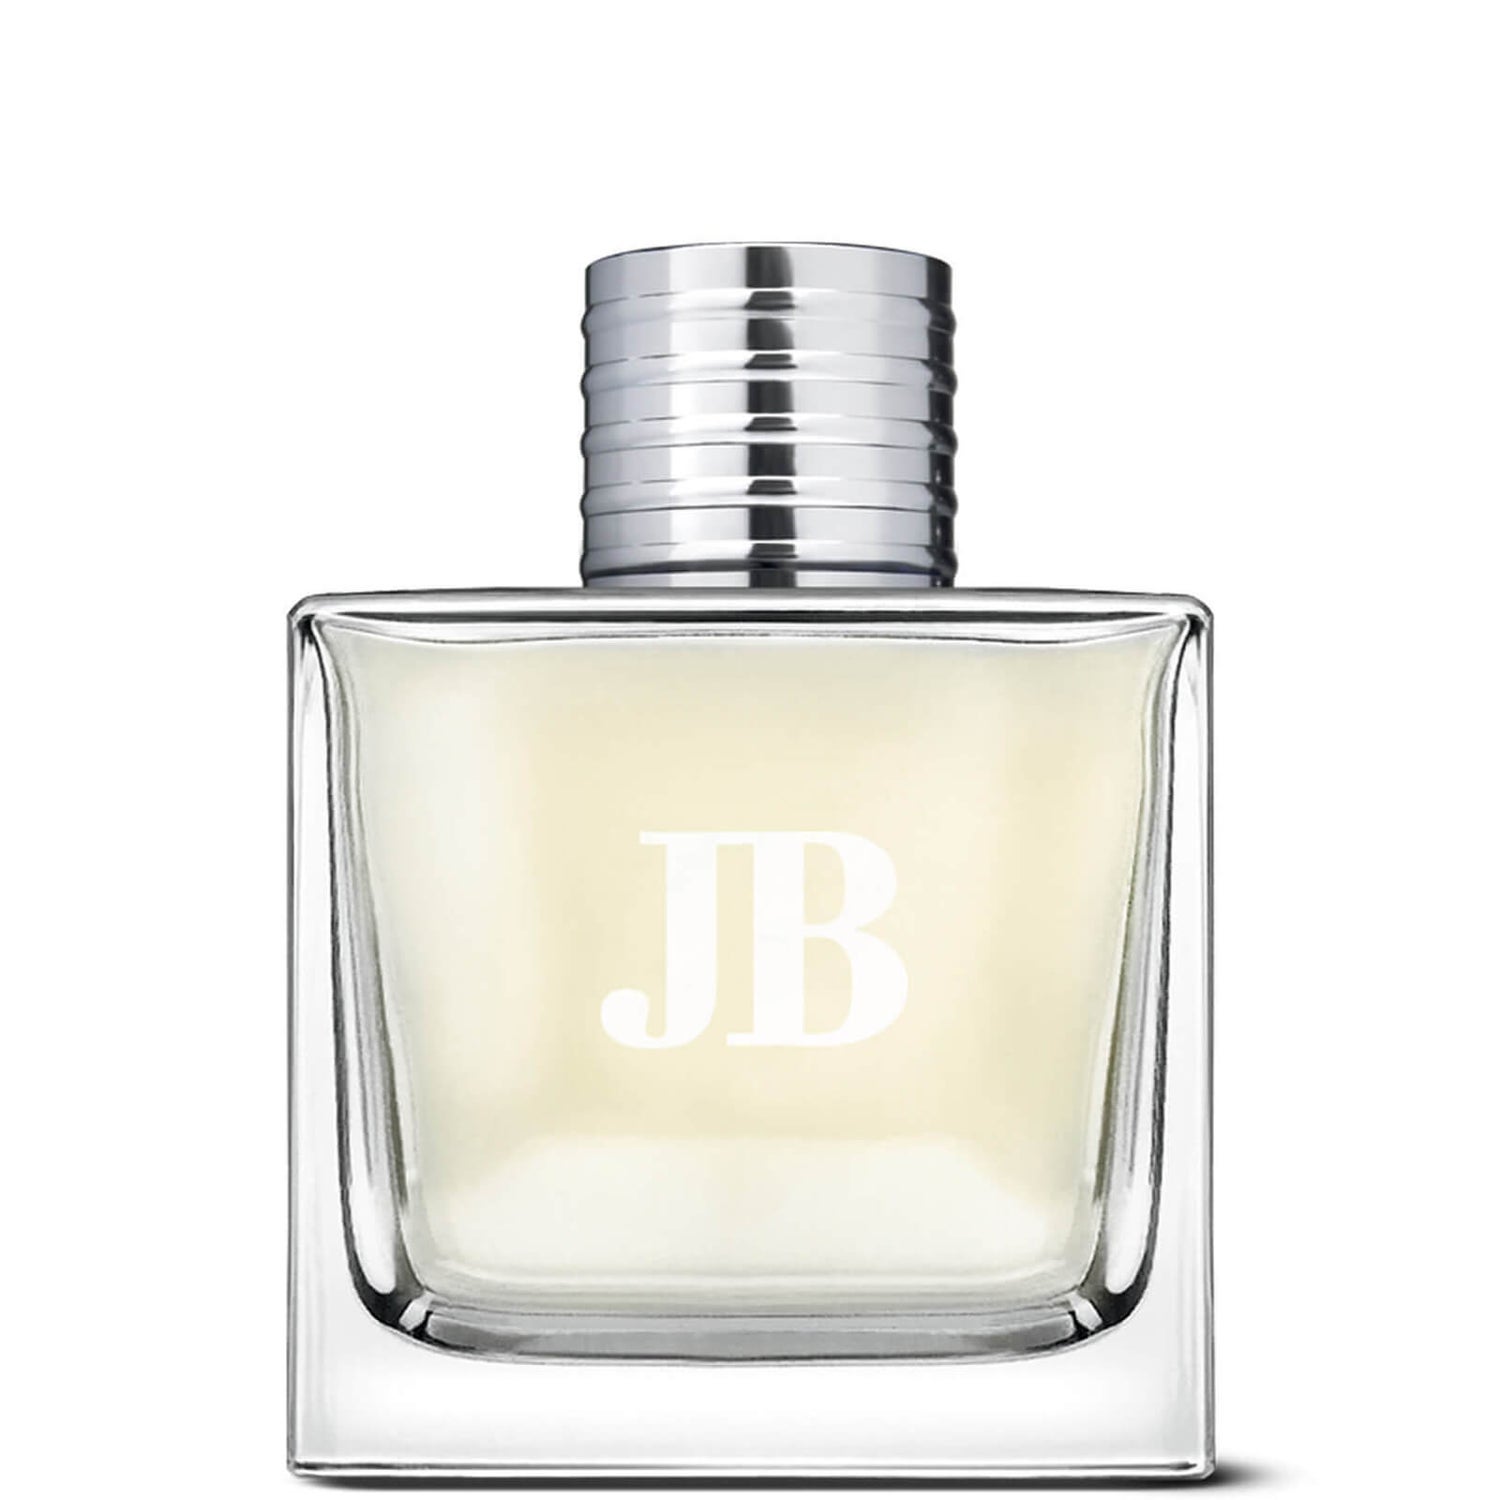 Jack Black JB Eau de Parfum 100ml